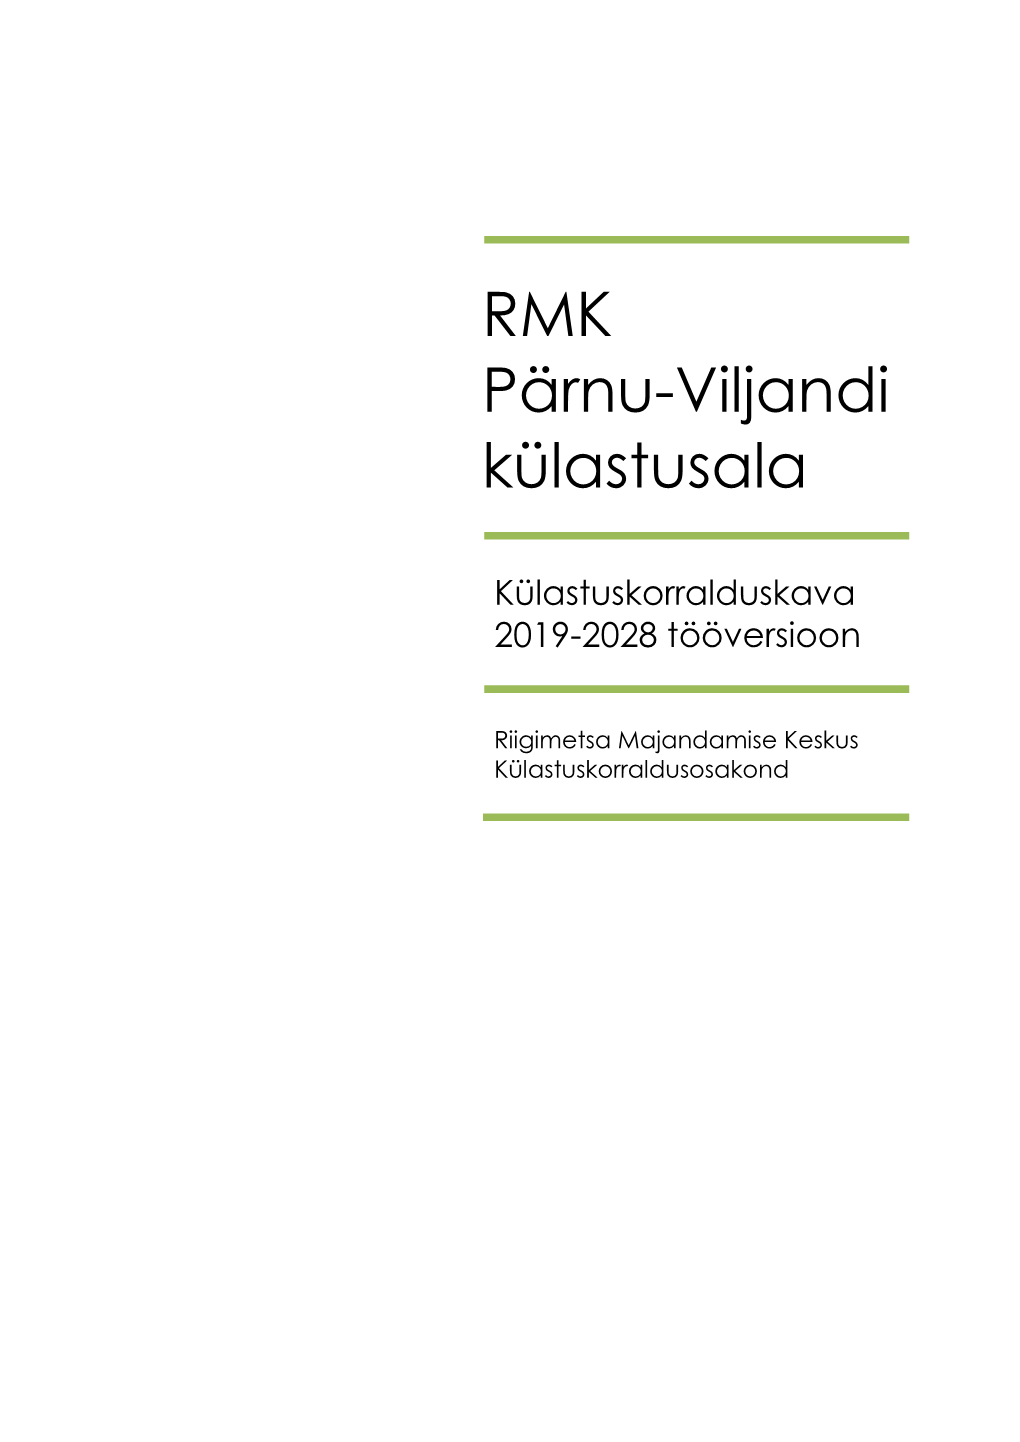 RMK Pärnu-Viljandi Külastusala Loodushoiuobjektid Paiknevad Valdavalt Riigimetsamaal (Tabel 3)